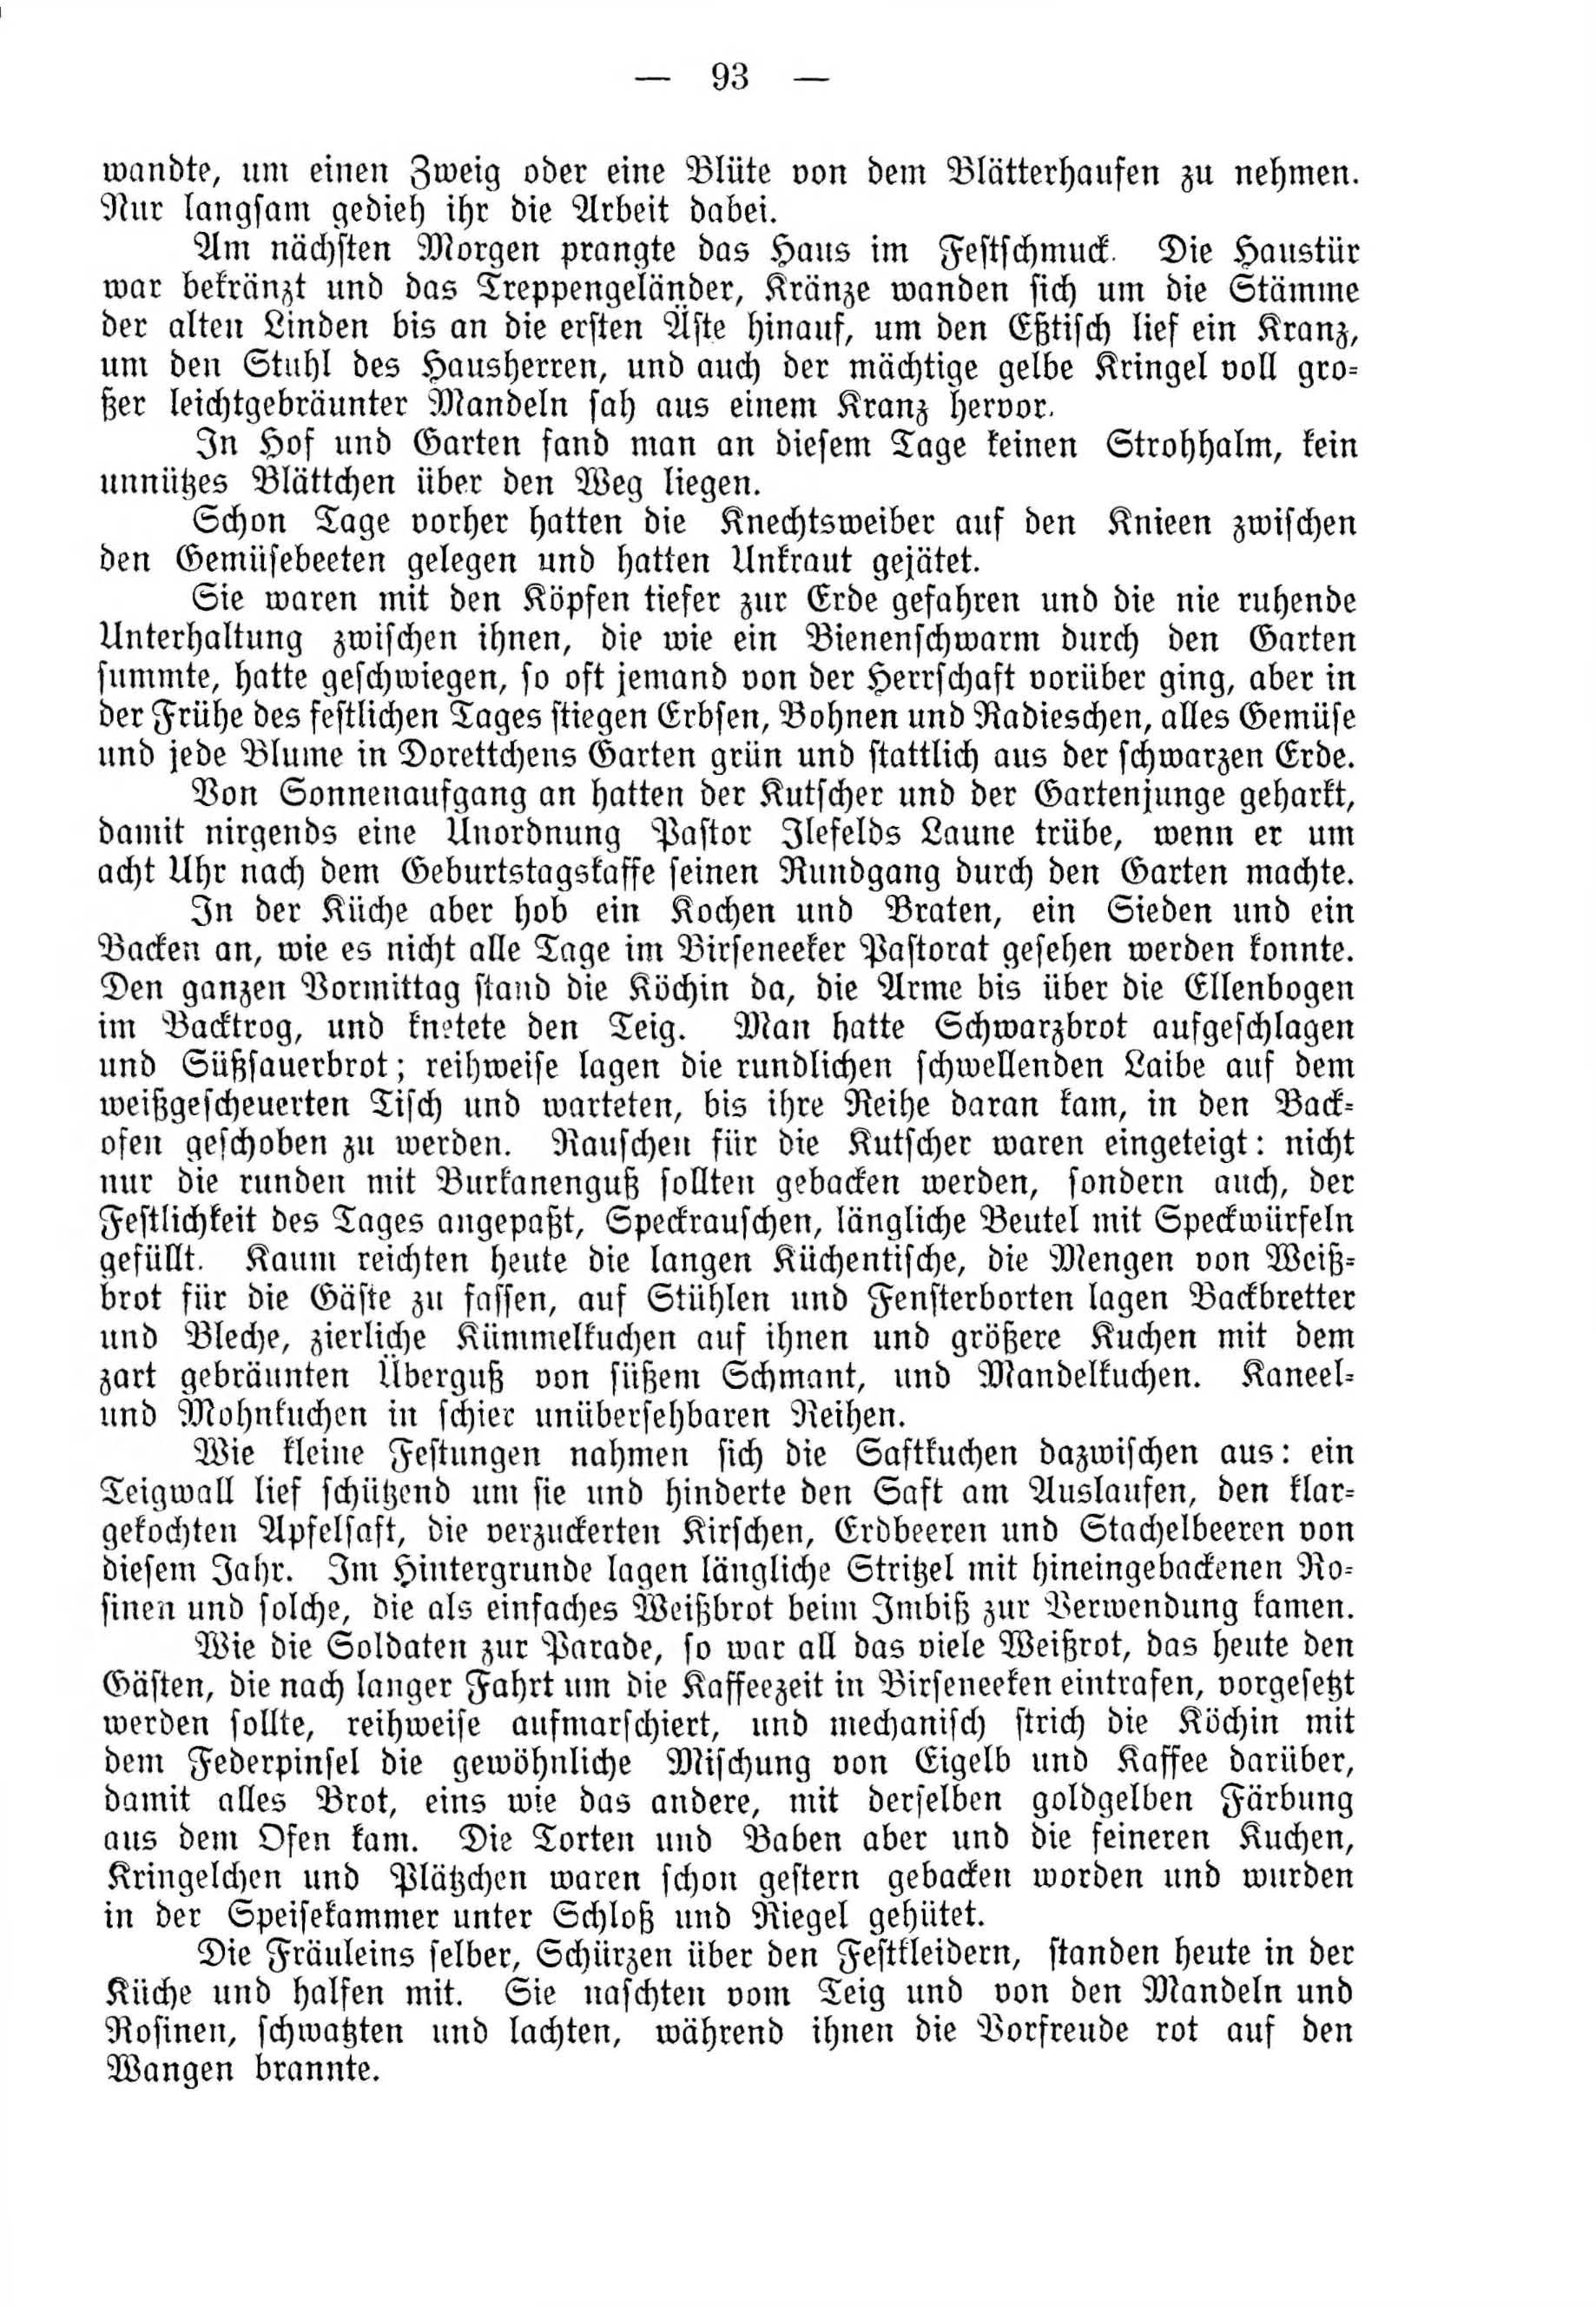 Deutsche Monatsschrift für Russland [4] (1915) | 93. (93) Haupttext